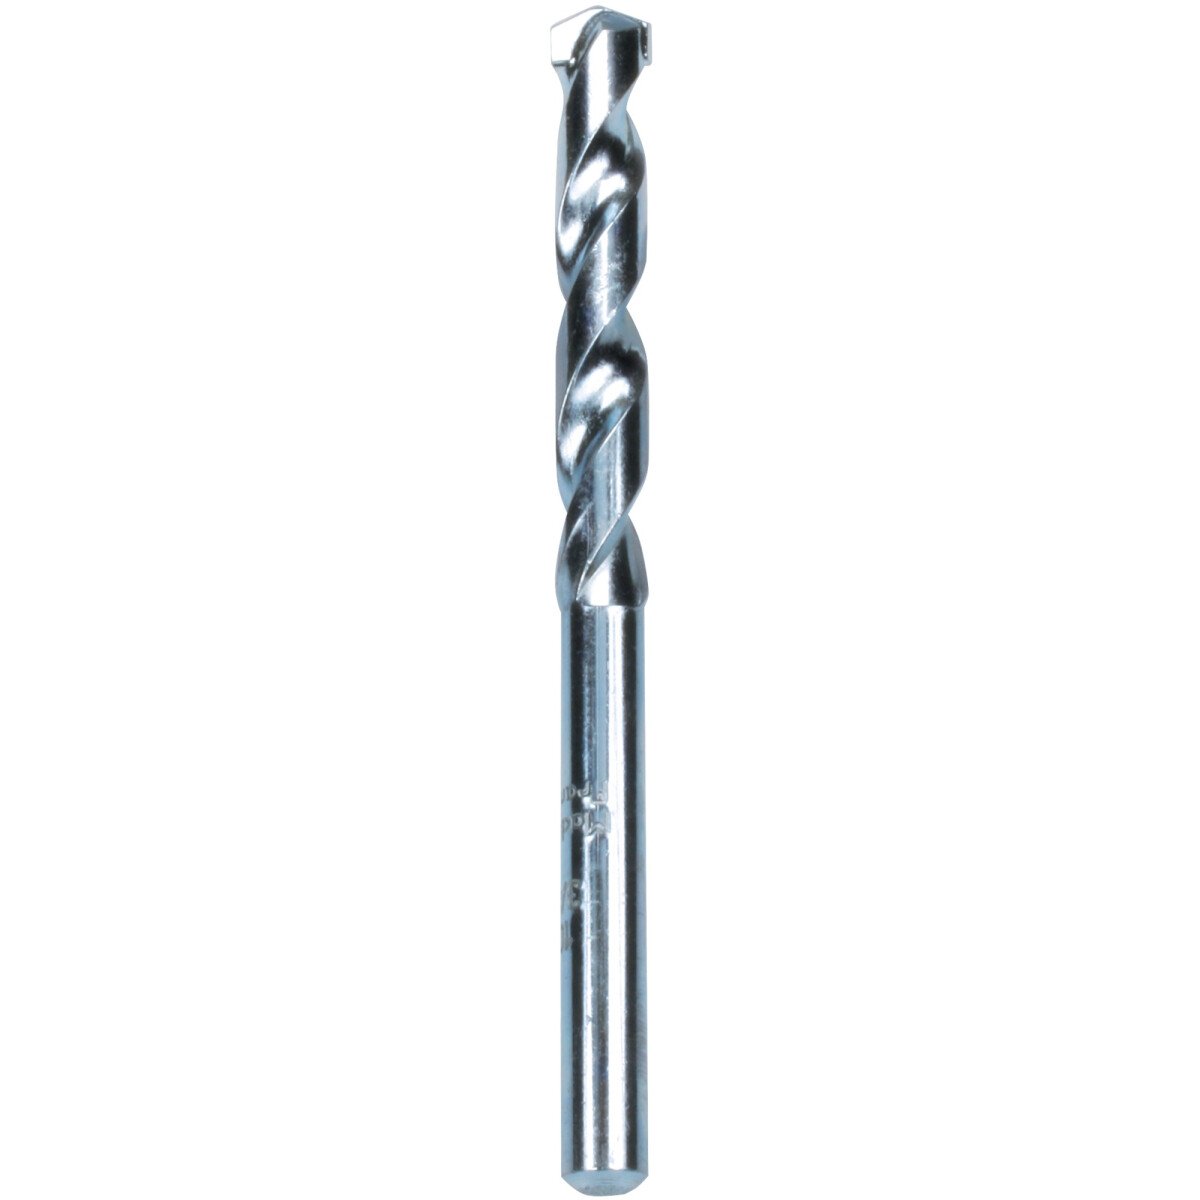 Makita P-19744 Masonry Drill Bit, standard length, 1 per pack Diameter: 7.0mm, Bit Length: 100mm